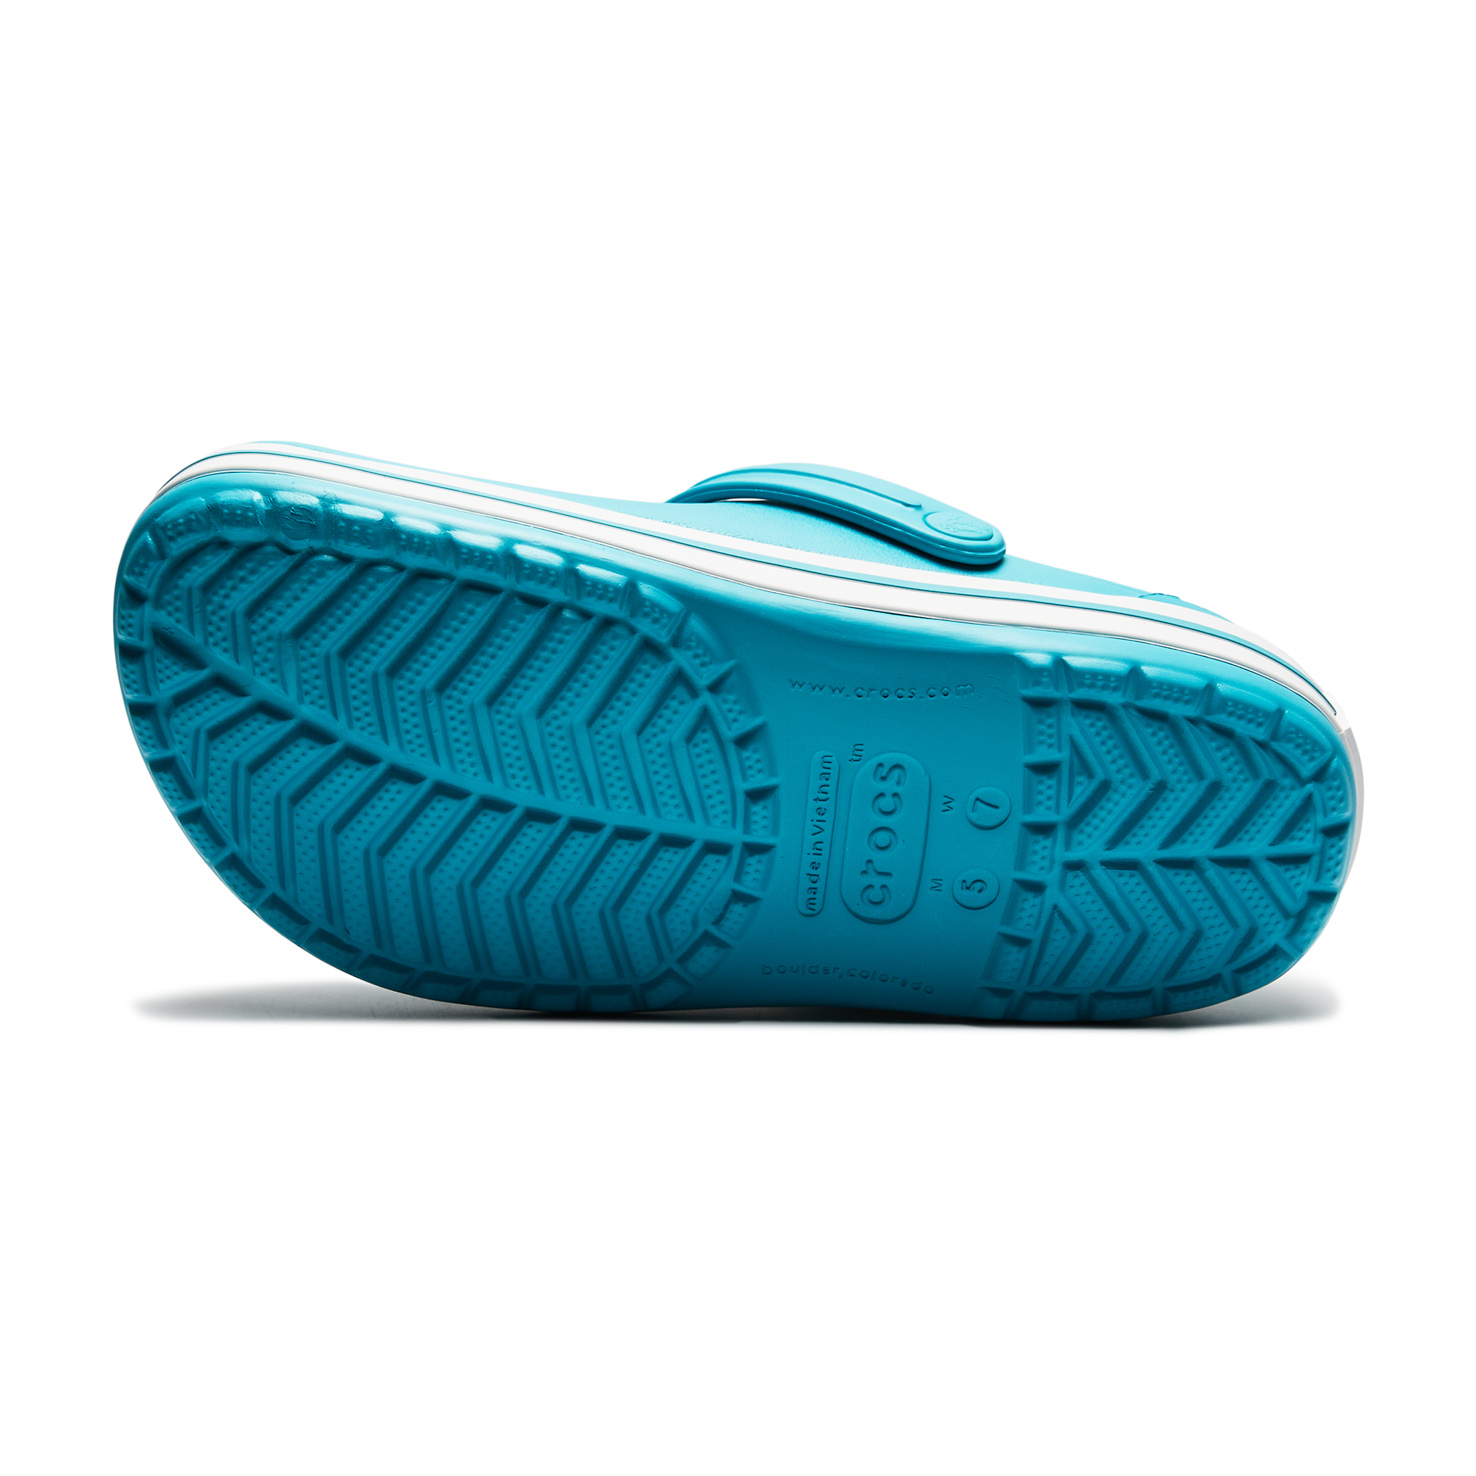 Crocband Crocs, размер 36-37, цвет голубой CR11016 - фото 6